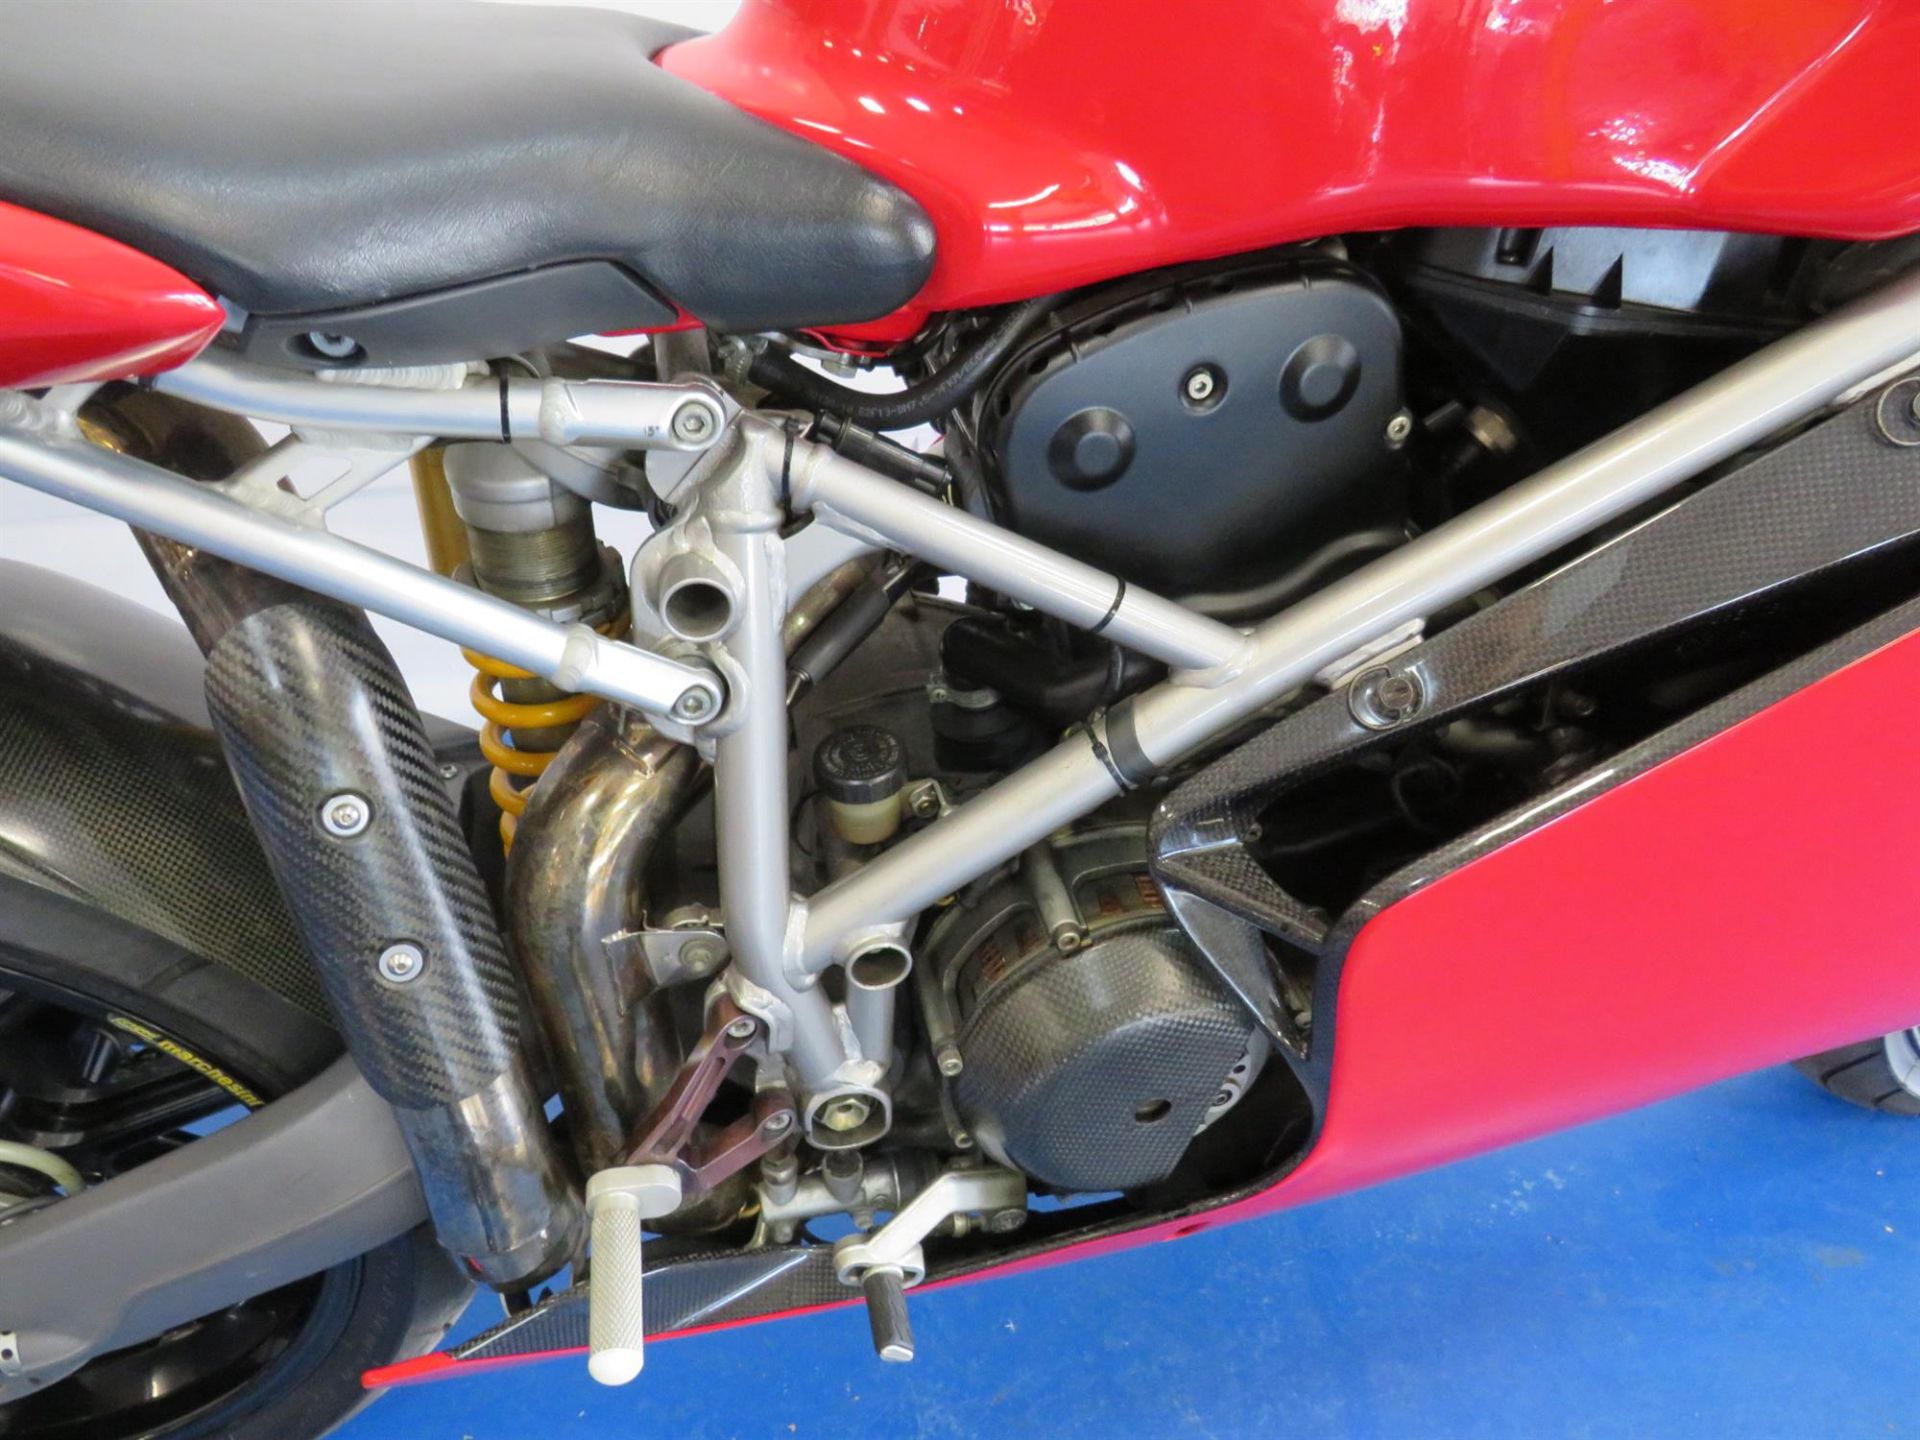 2003 Ducati 999R 999cc - Image 5 of 10